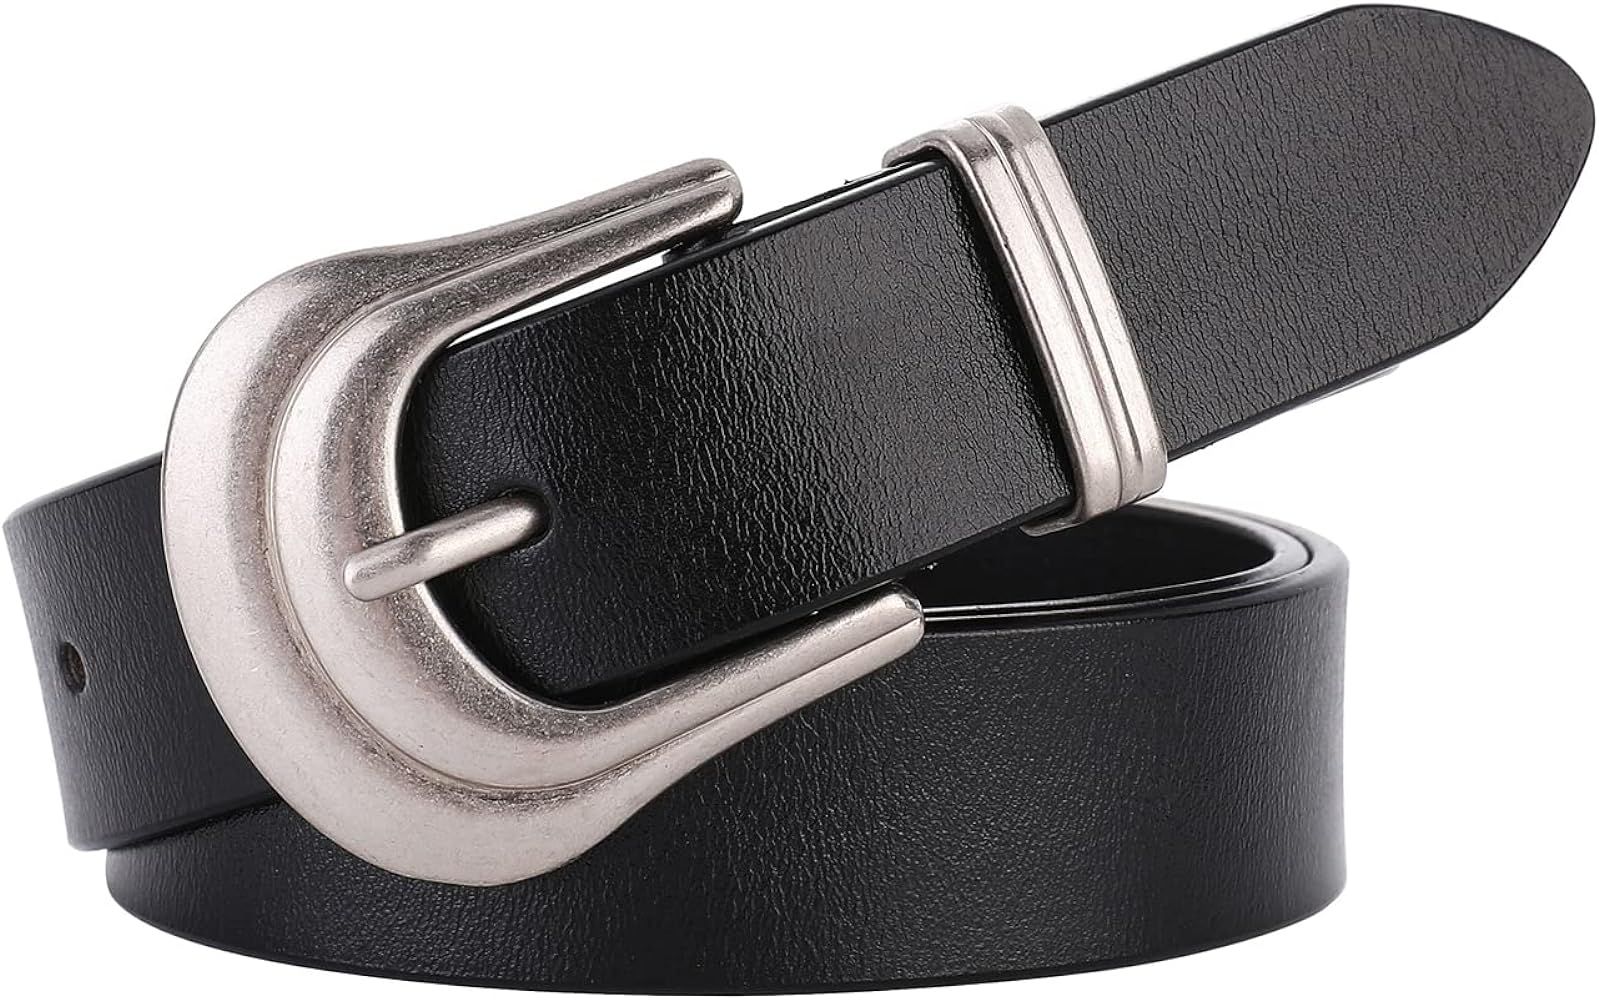 ALAIX Women's Belt Western Belts Silver Gold Buckle Black Leather Belt Pants Jeans Belts for Women | Amazon (US)